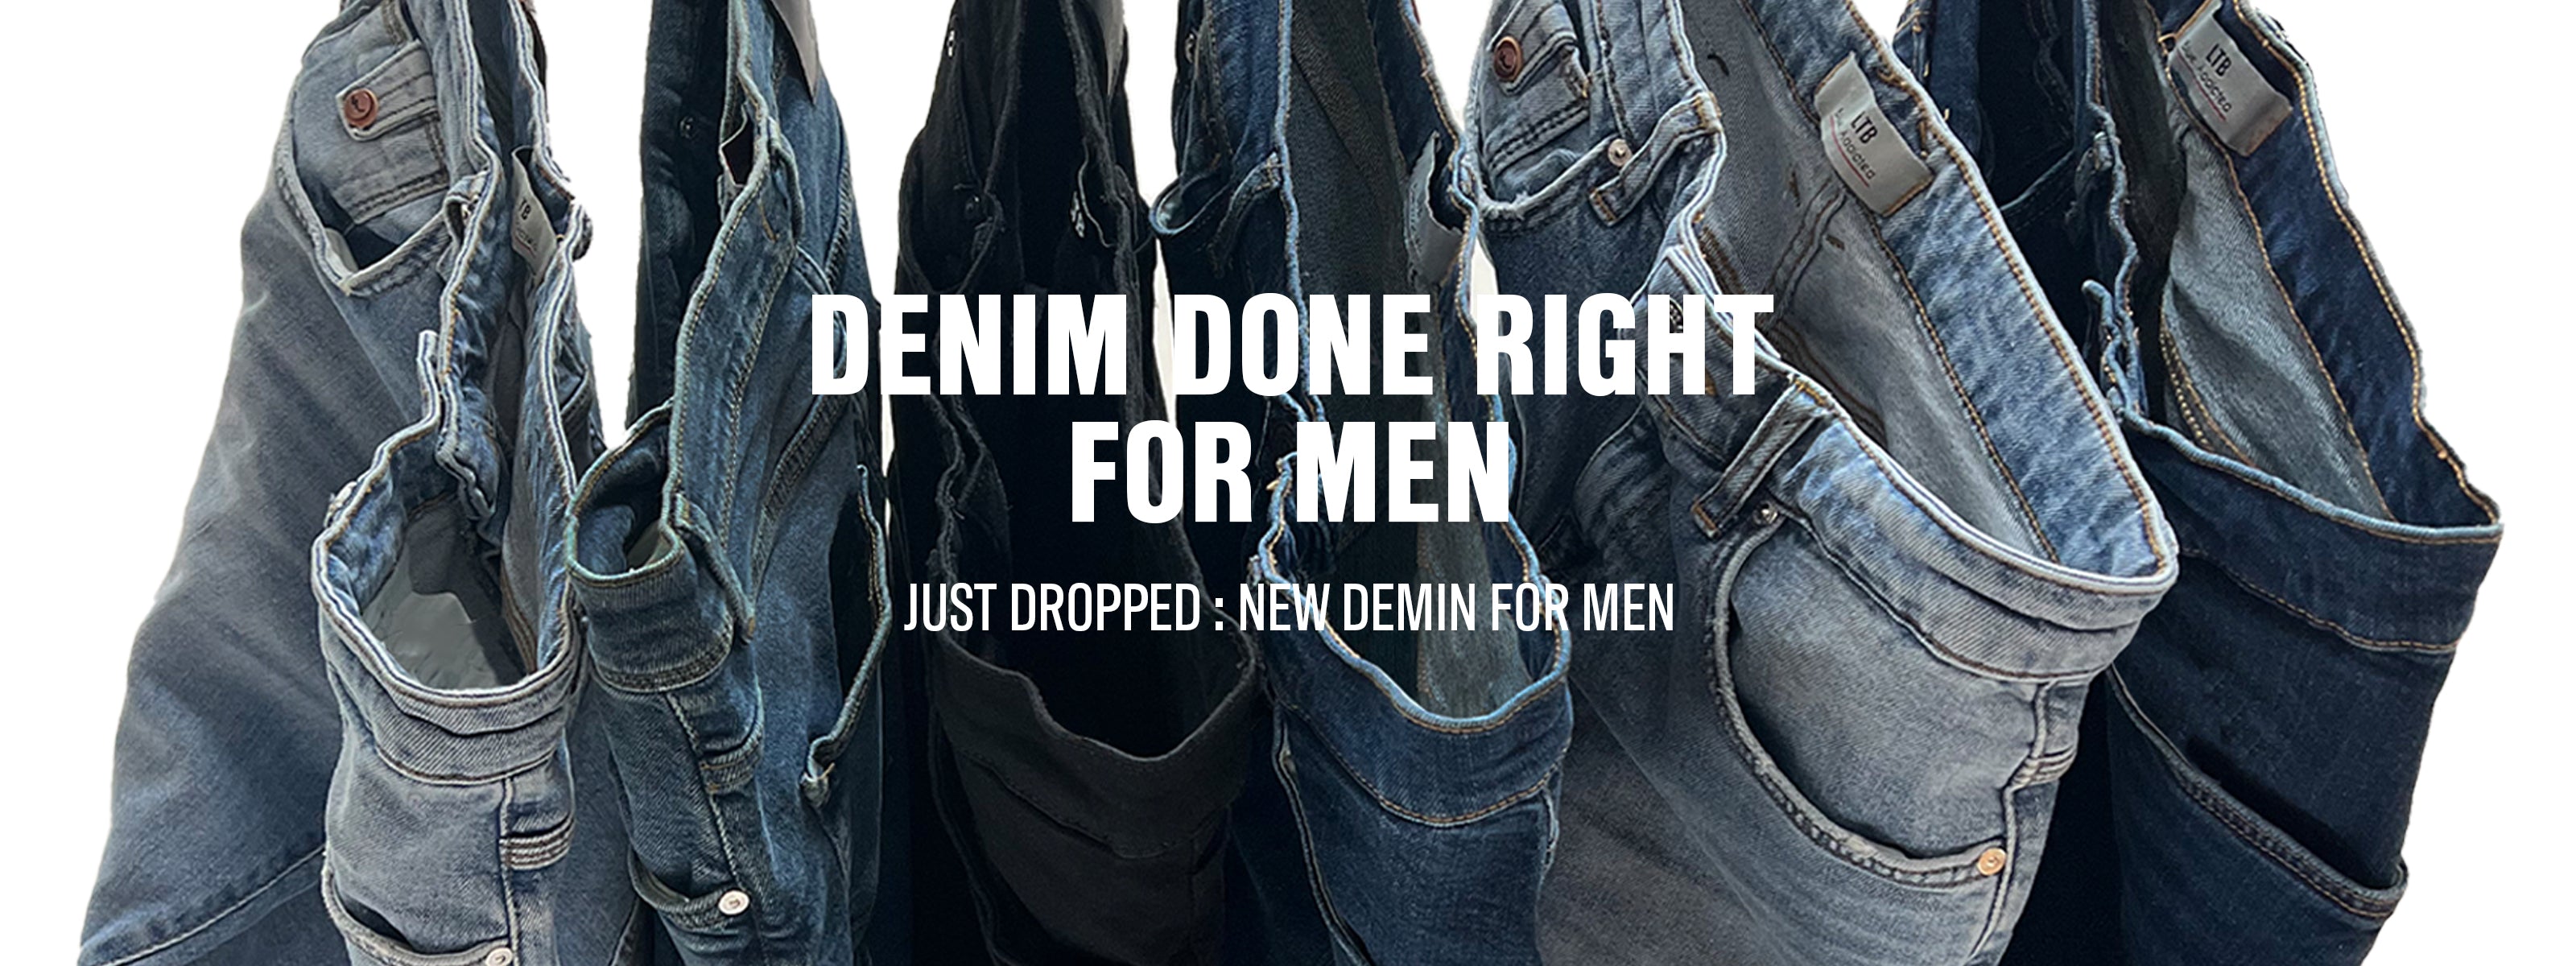 Denim for Women and Men Online | LTB JEANS AUSTRALIA